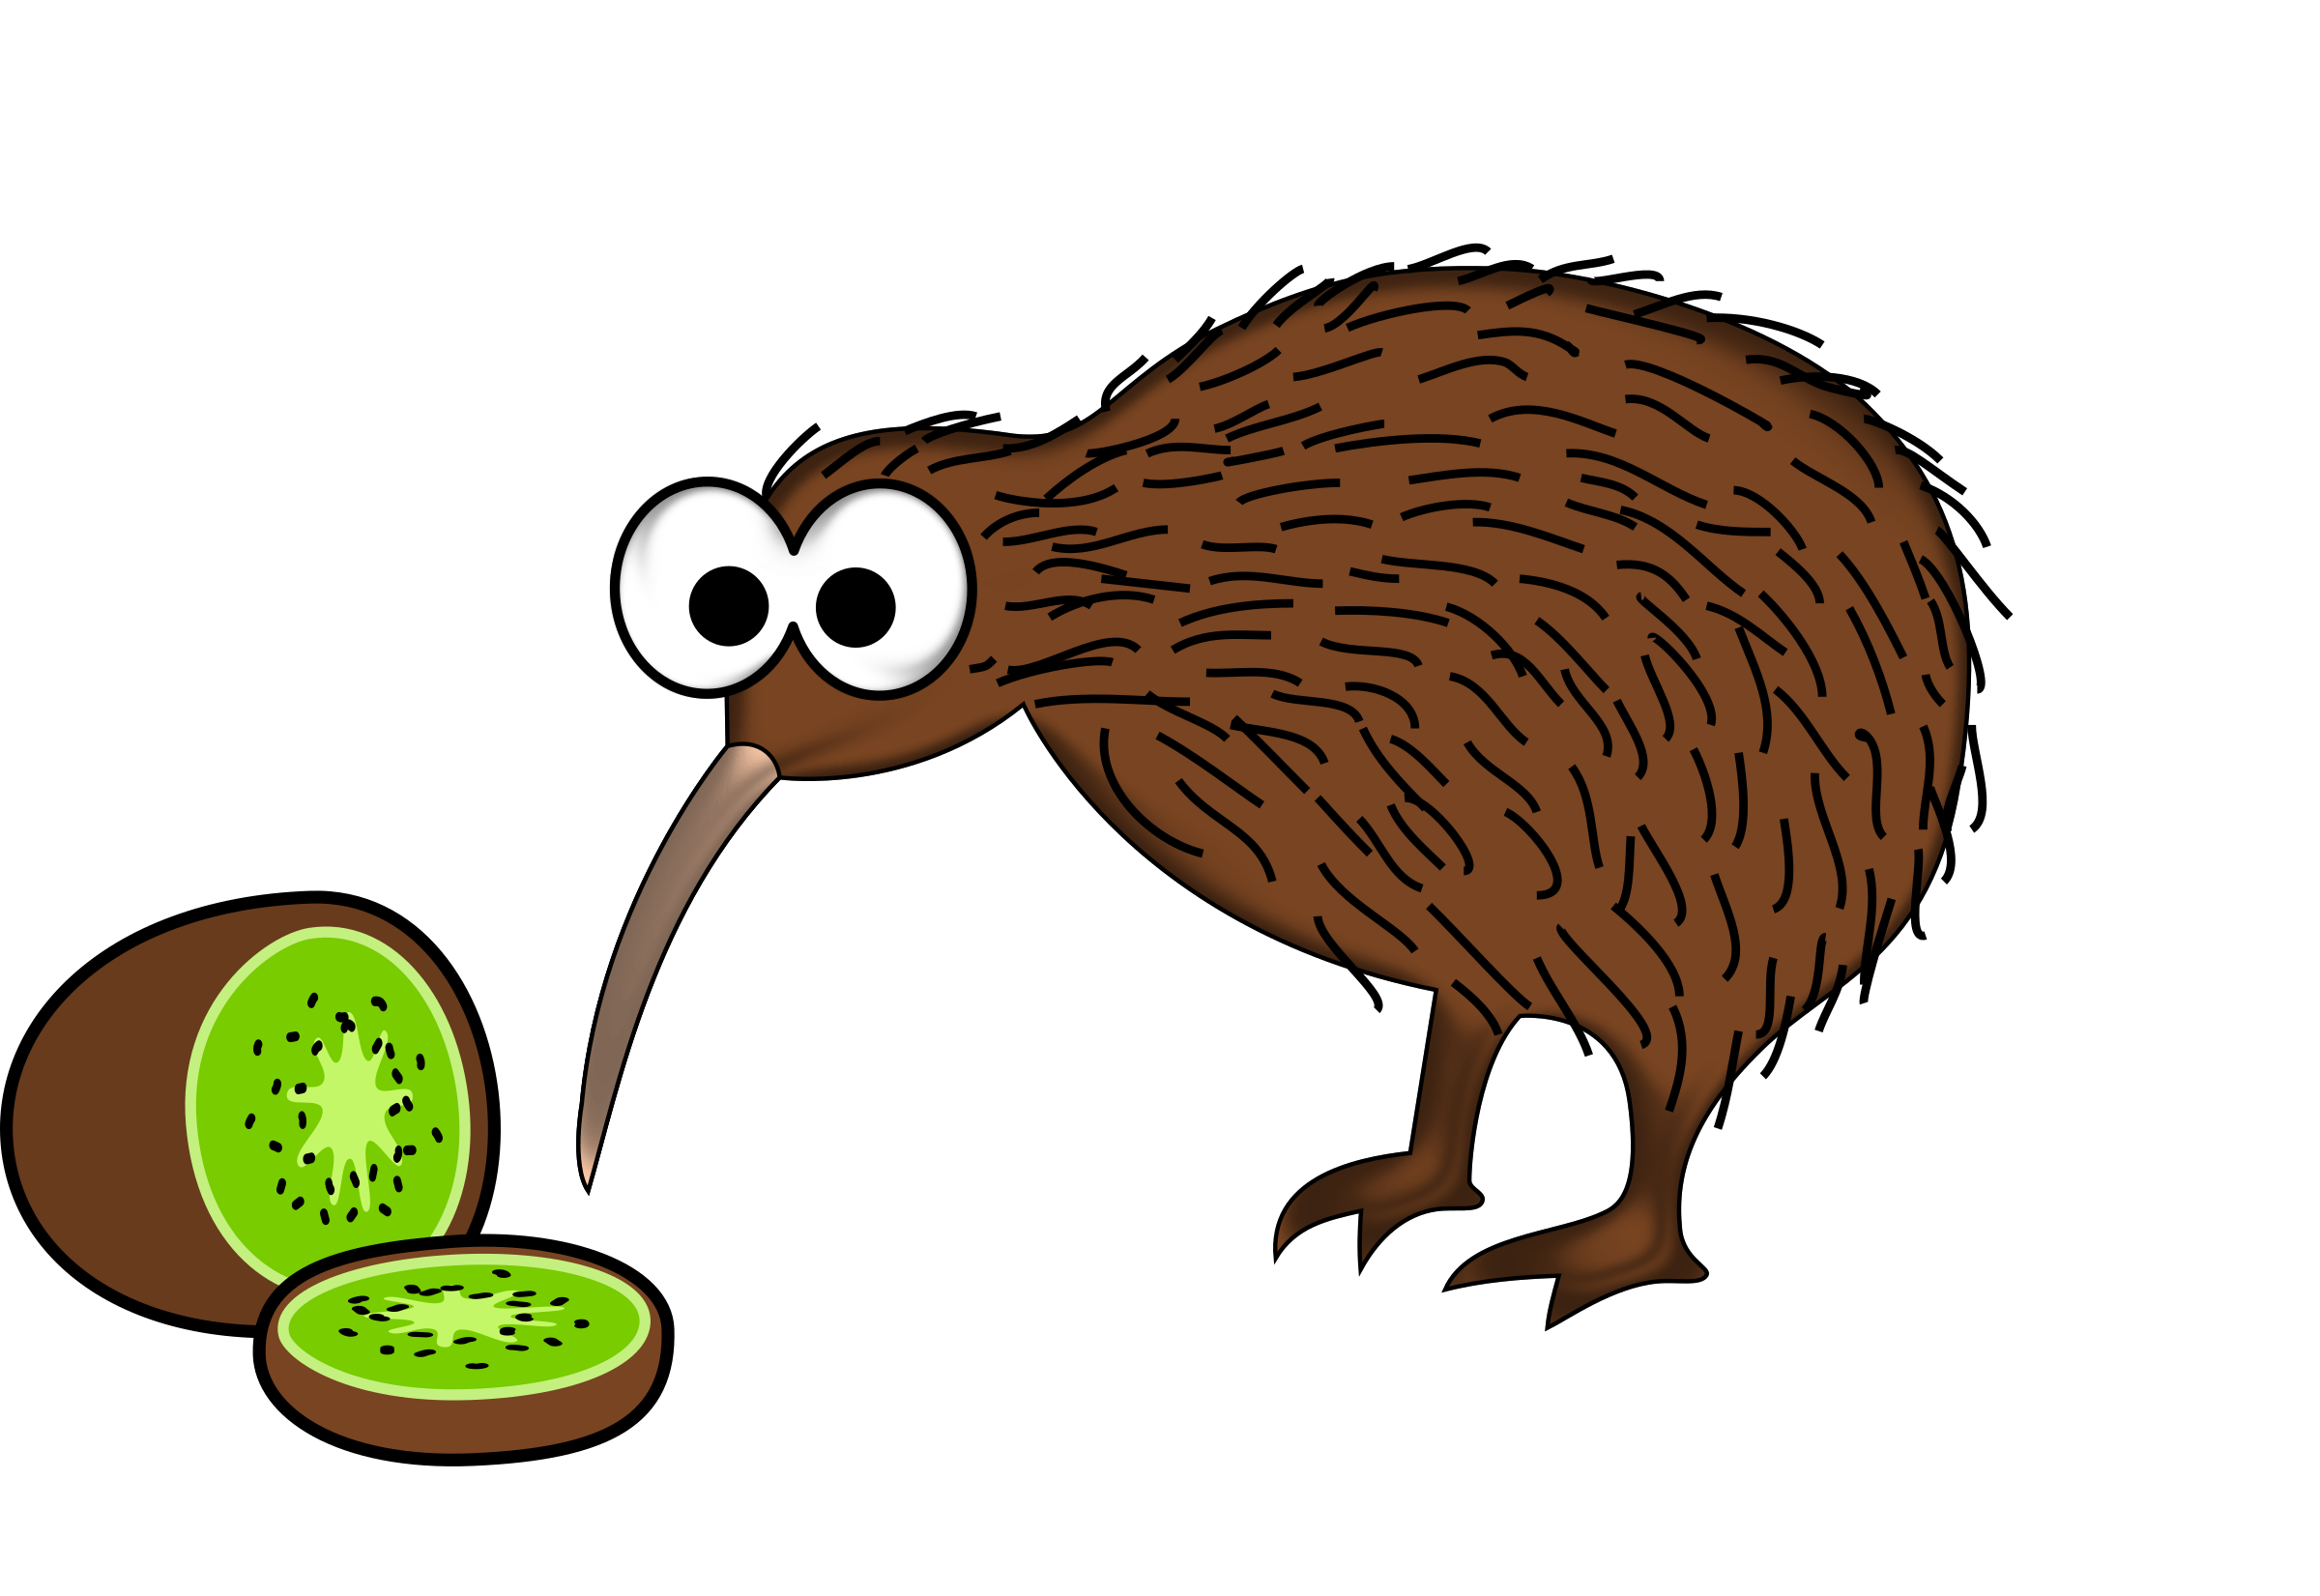 Download PNG image - Kiwi Bird PNG File 